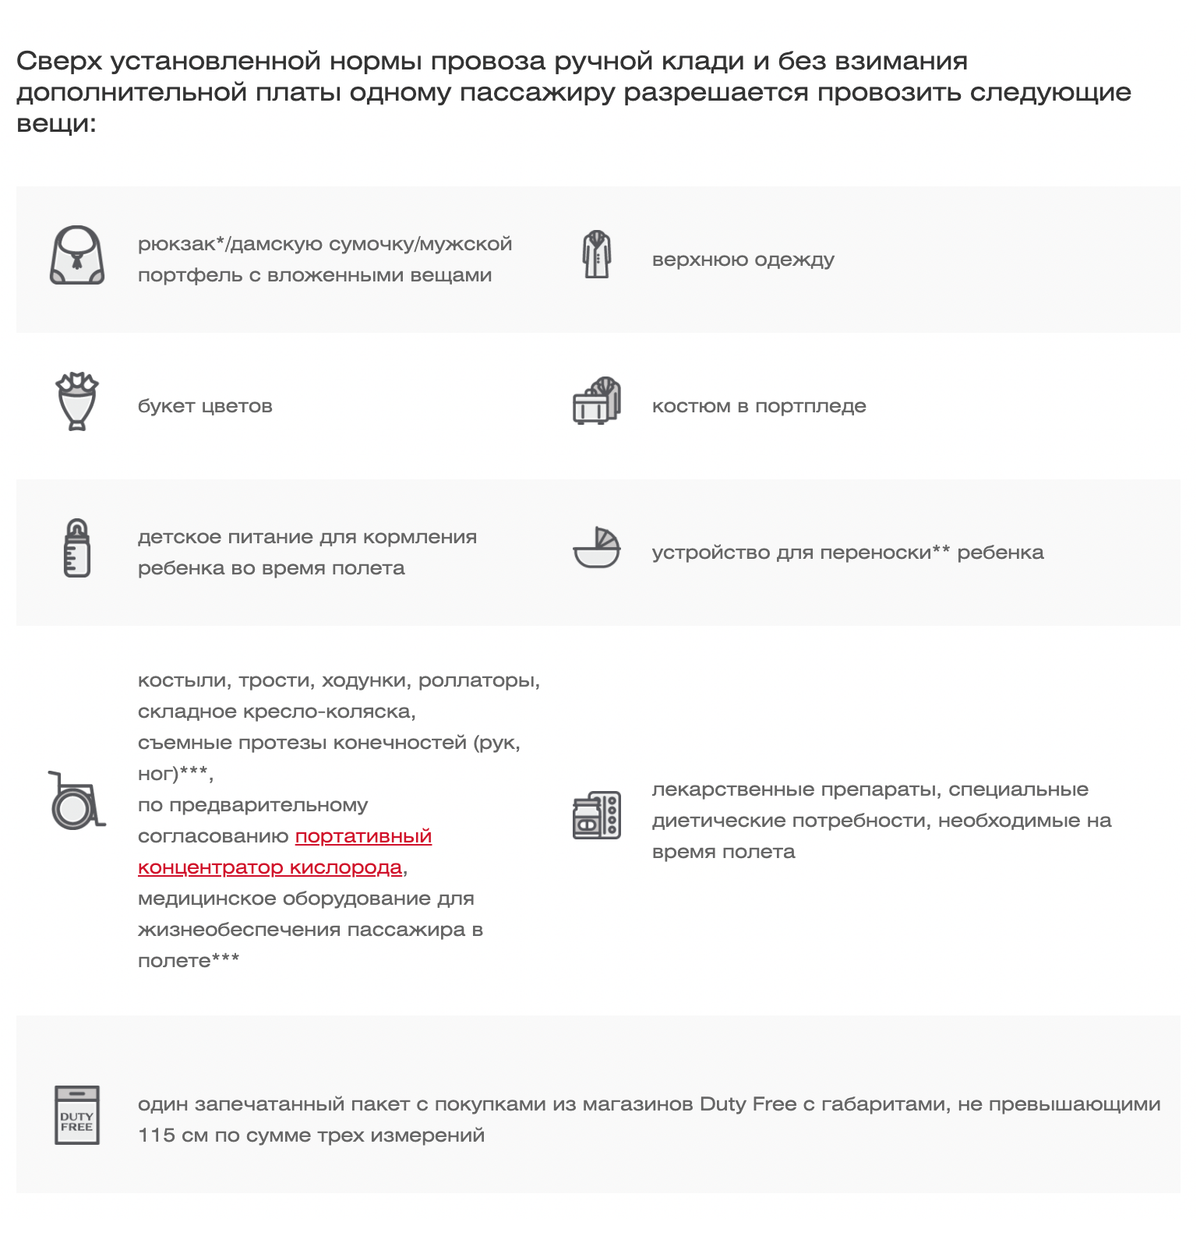 Авиакомпания «Россия» представила перечень правил в виде инфографики